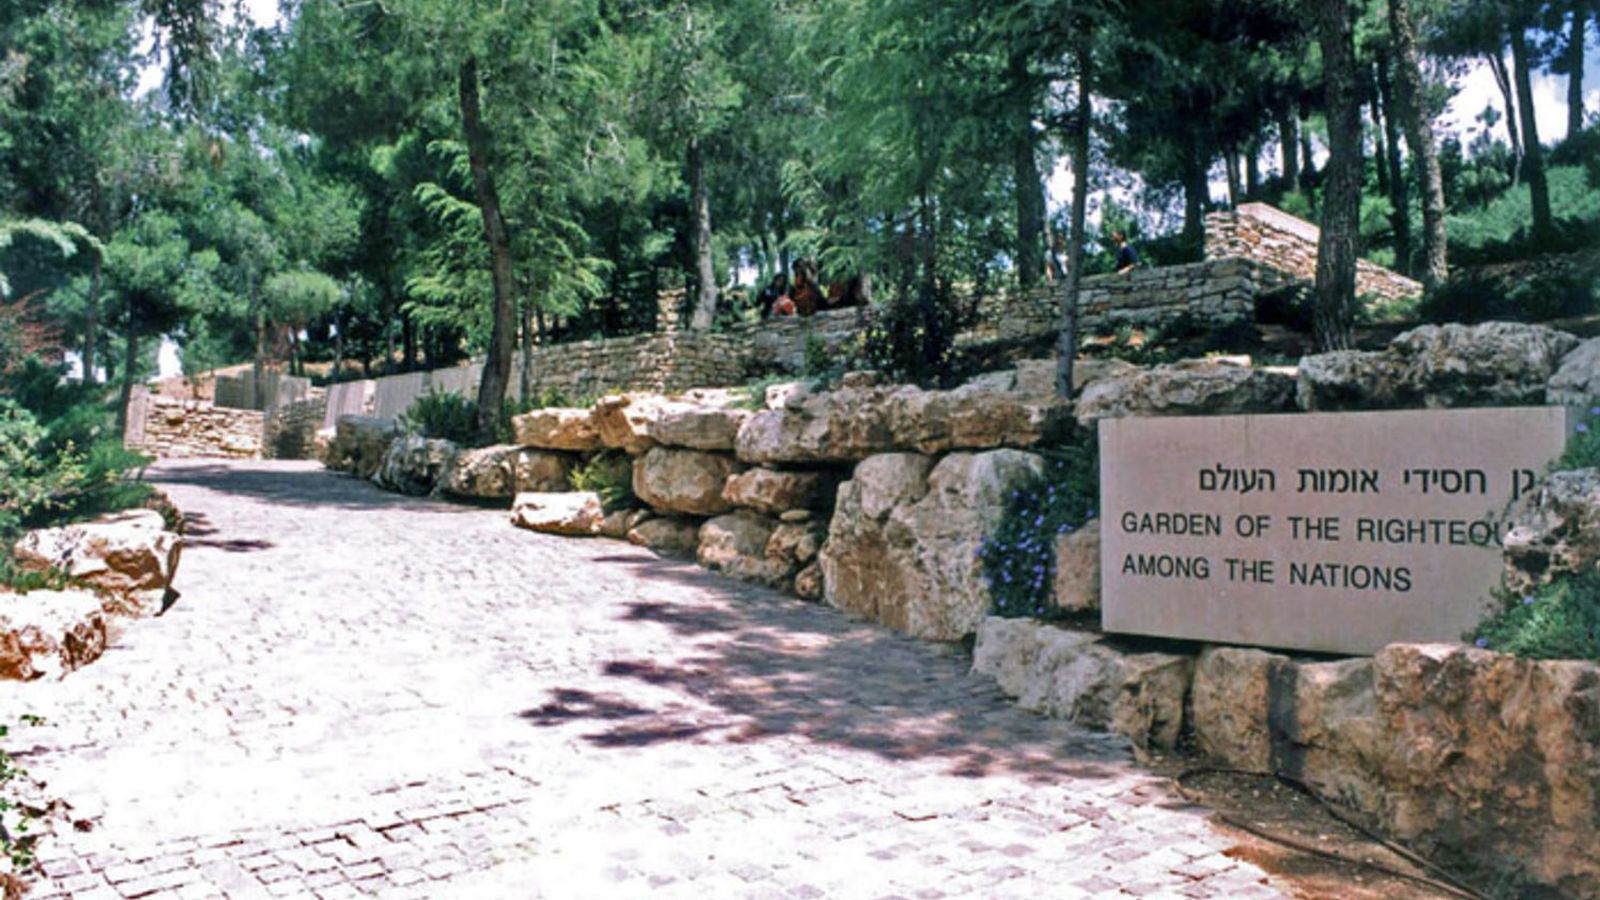 Foto: Entrada al jardín de los Justos entre las Naciones. (Yad Vashem)